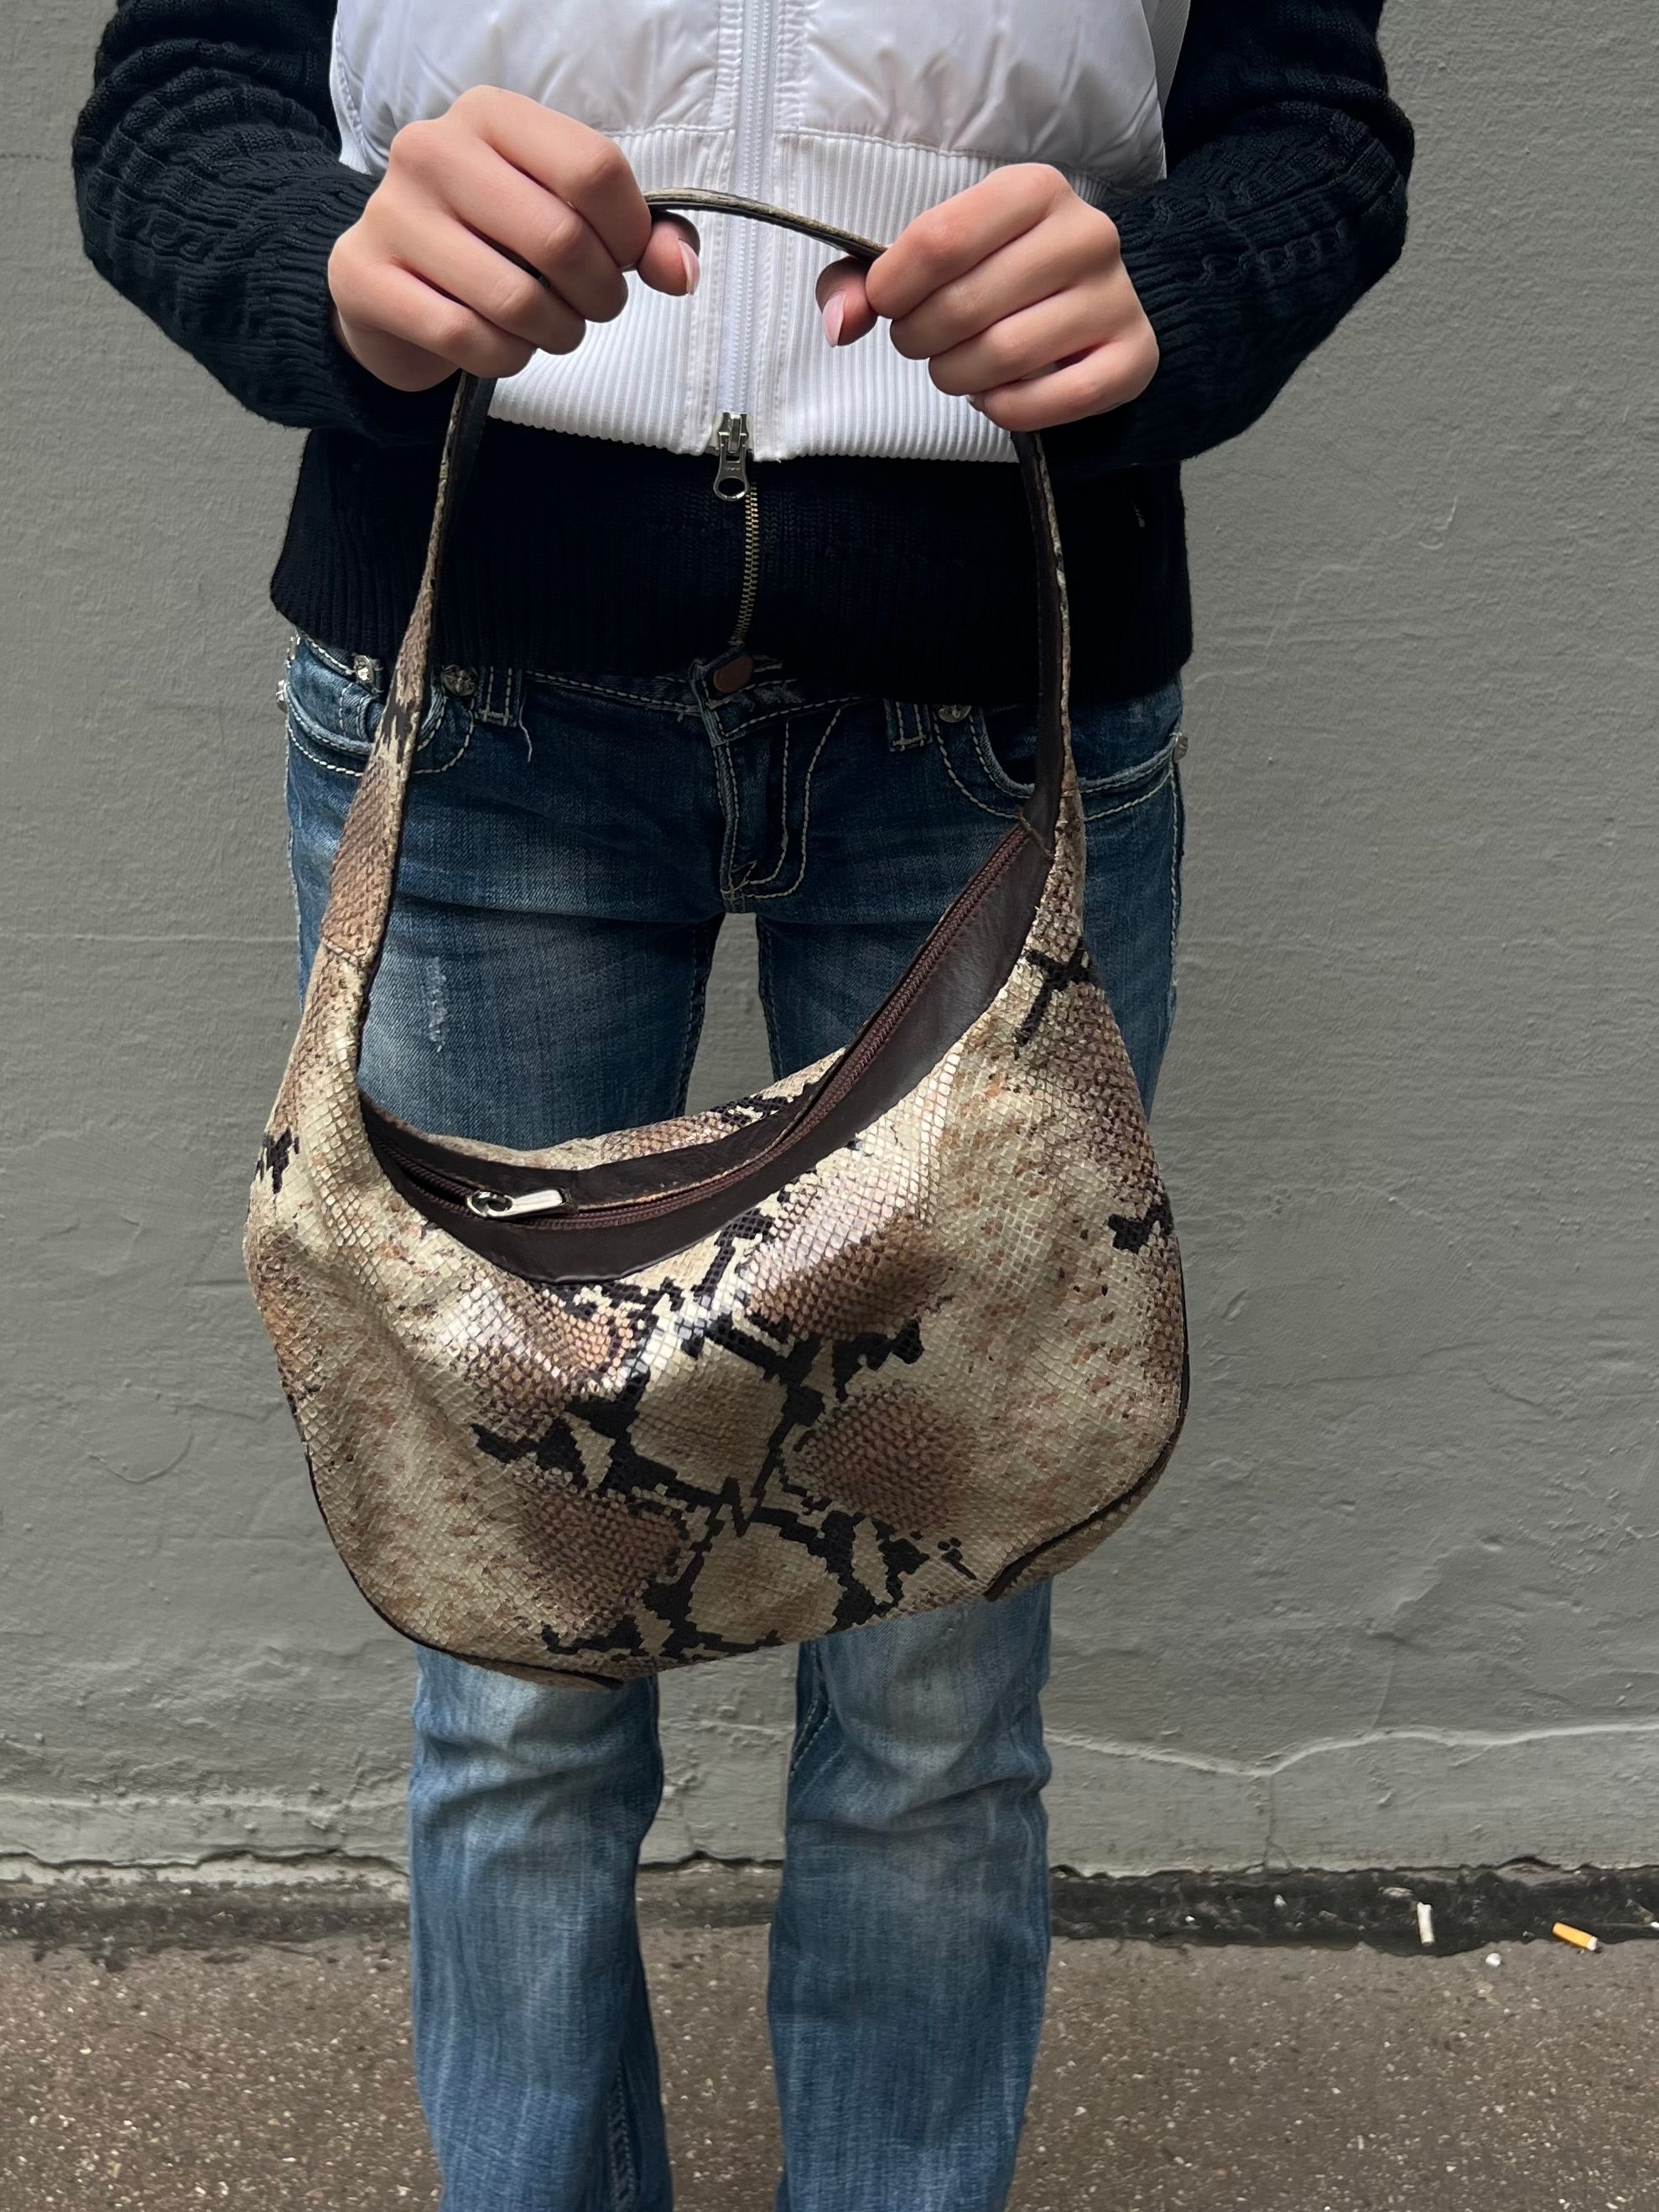 Tragebild einer Handtasche mit schlangenmuster von vorne